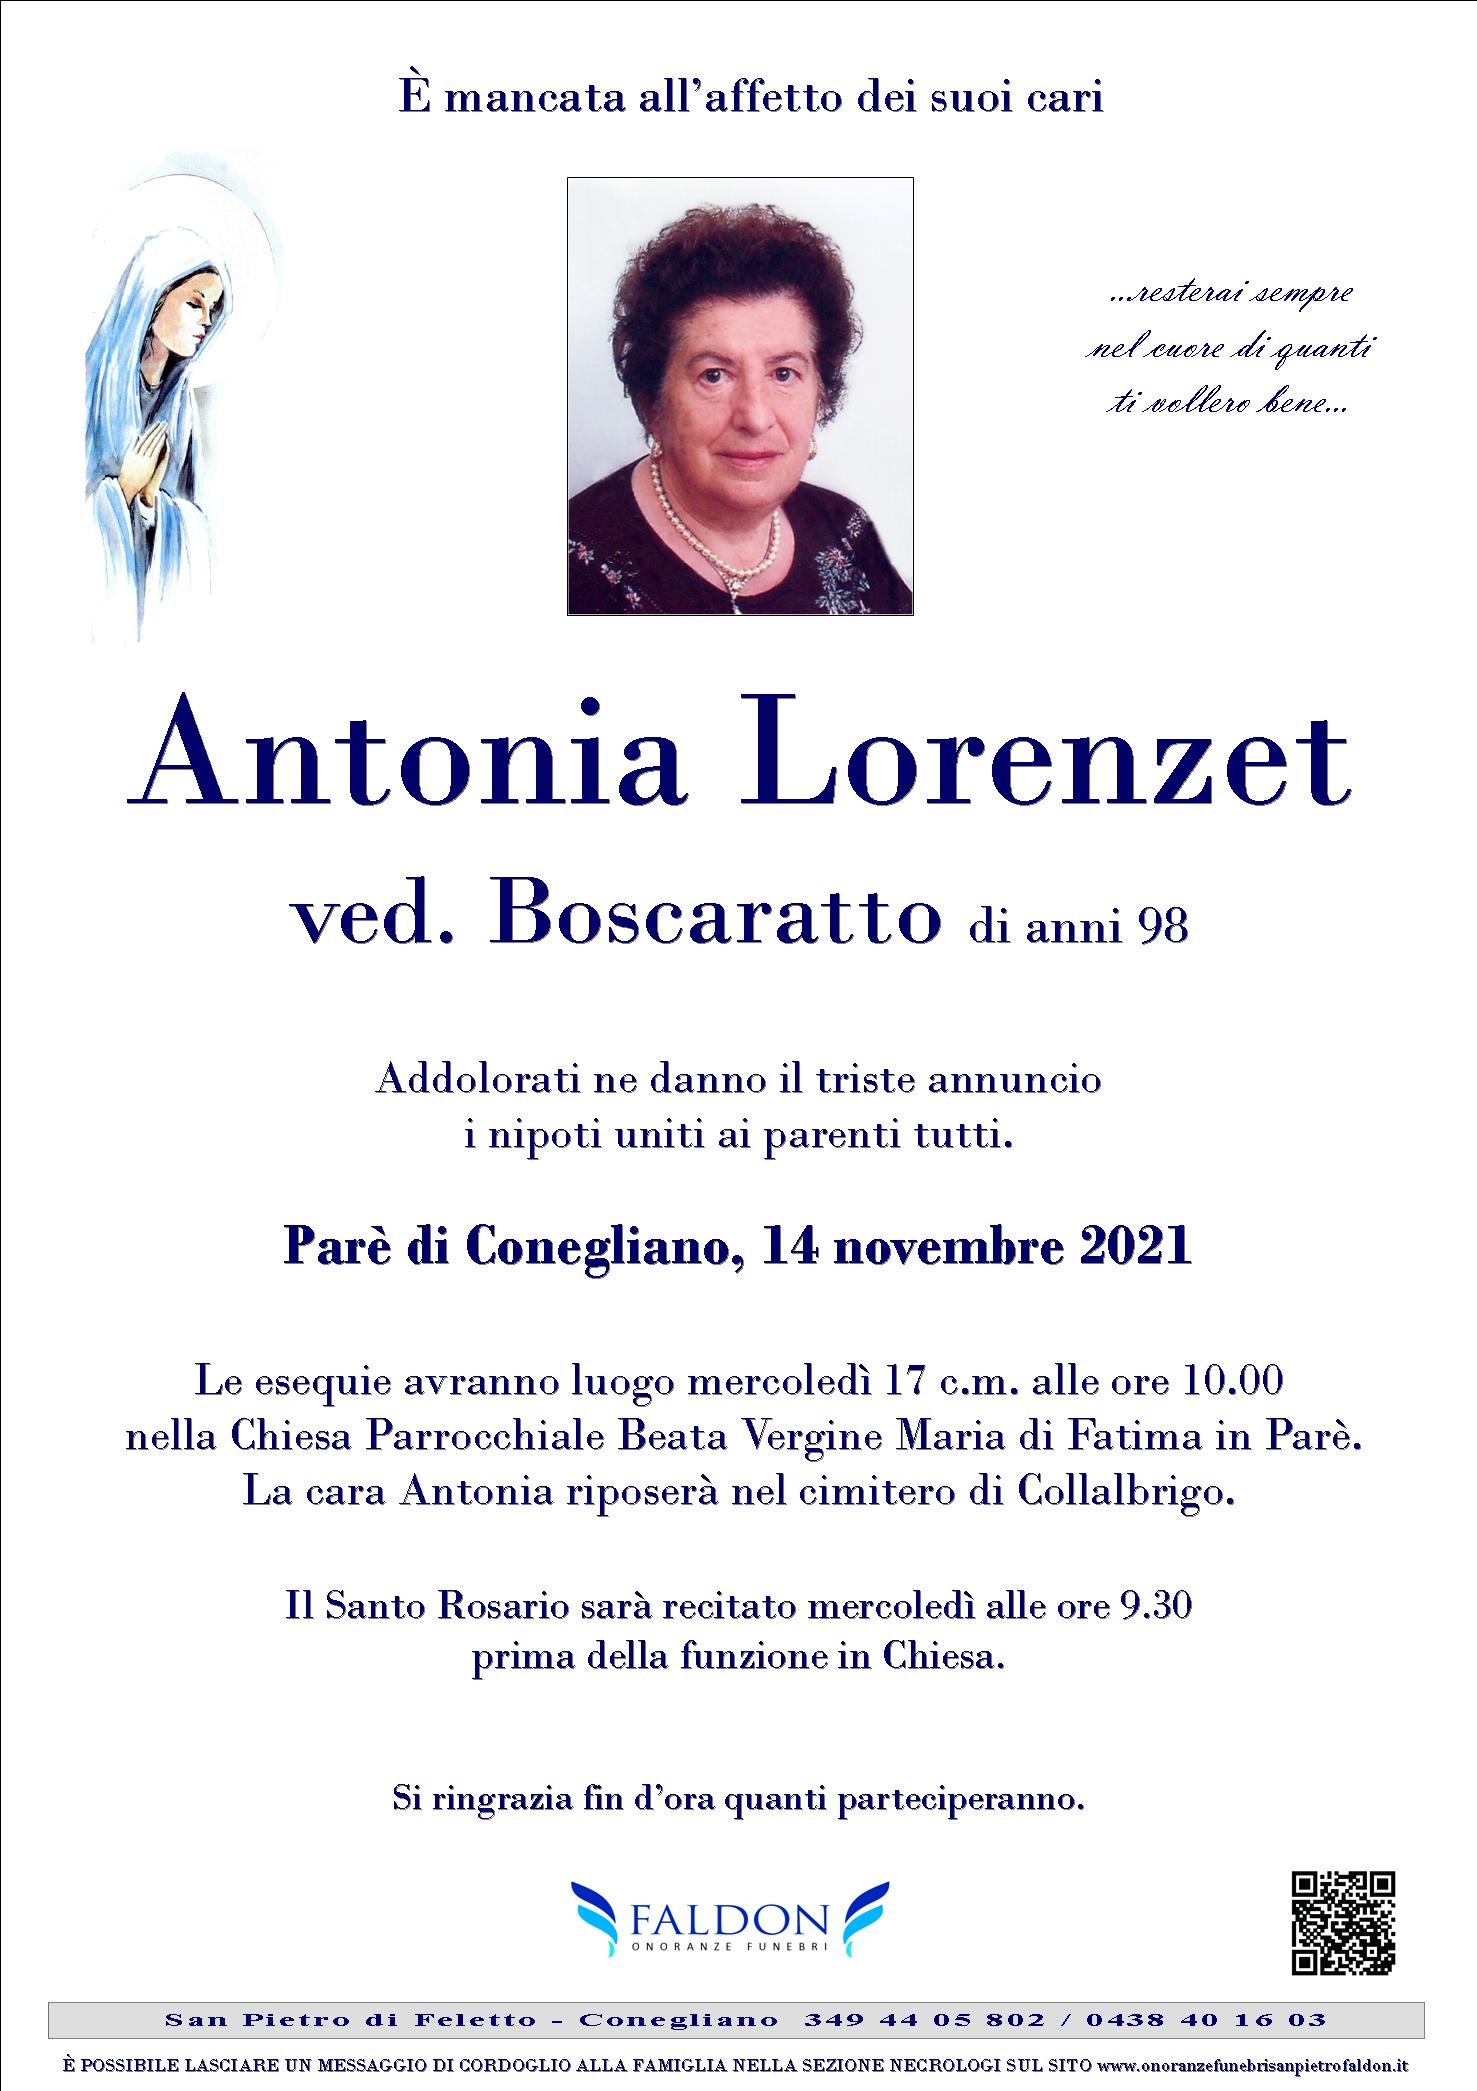 Antonia Lorenzet